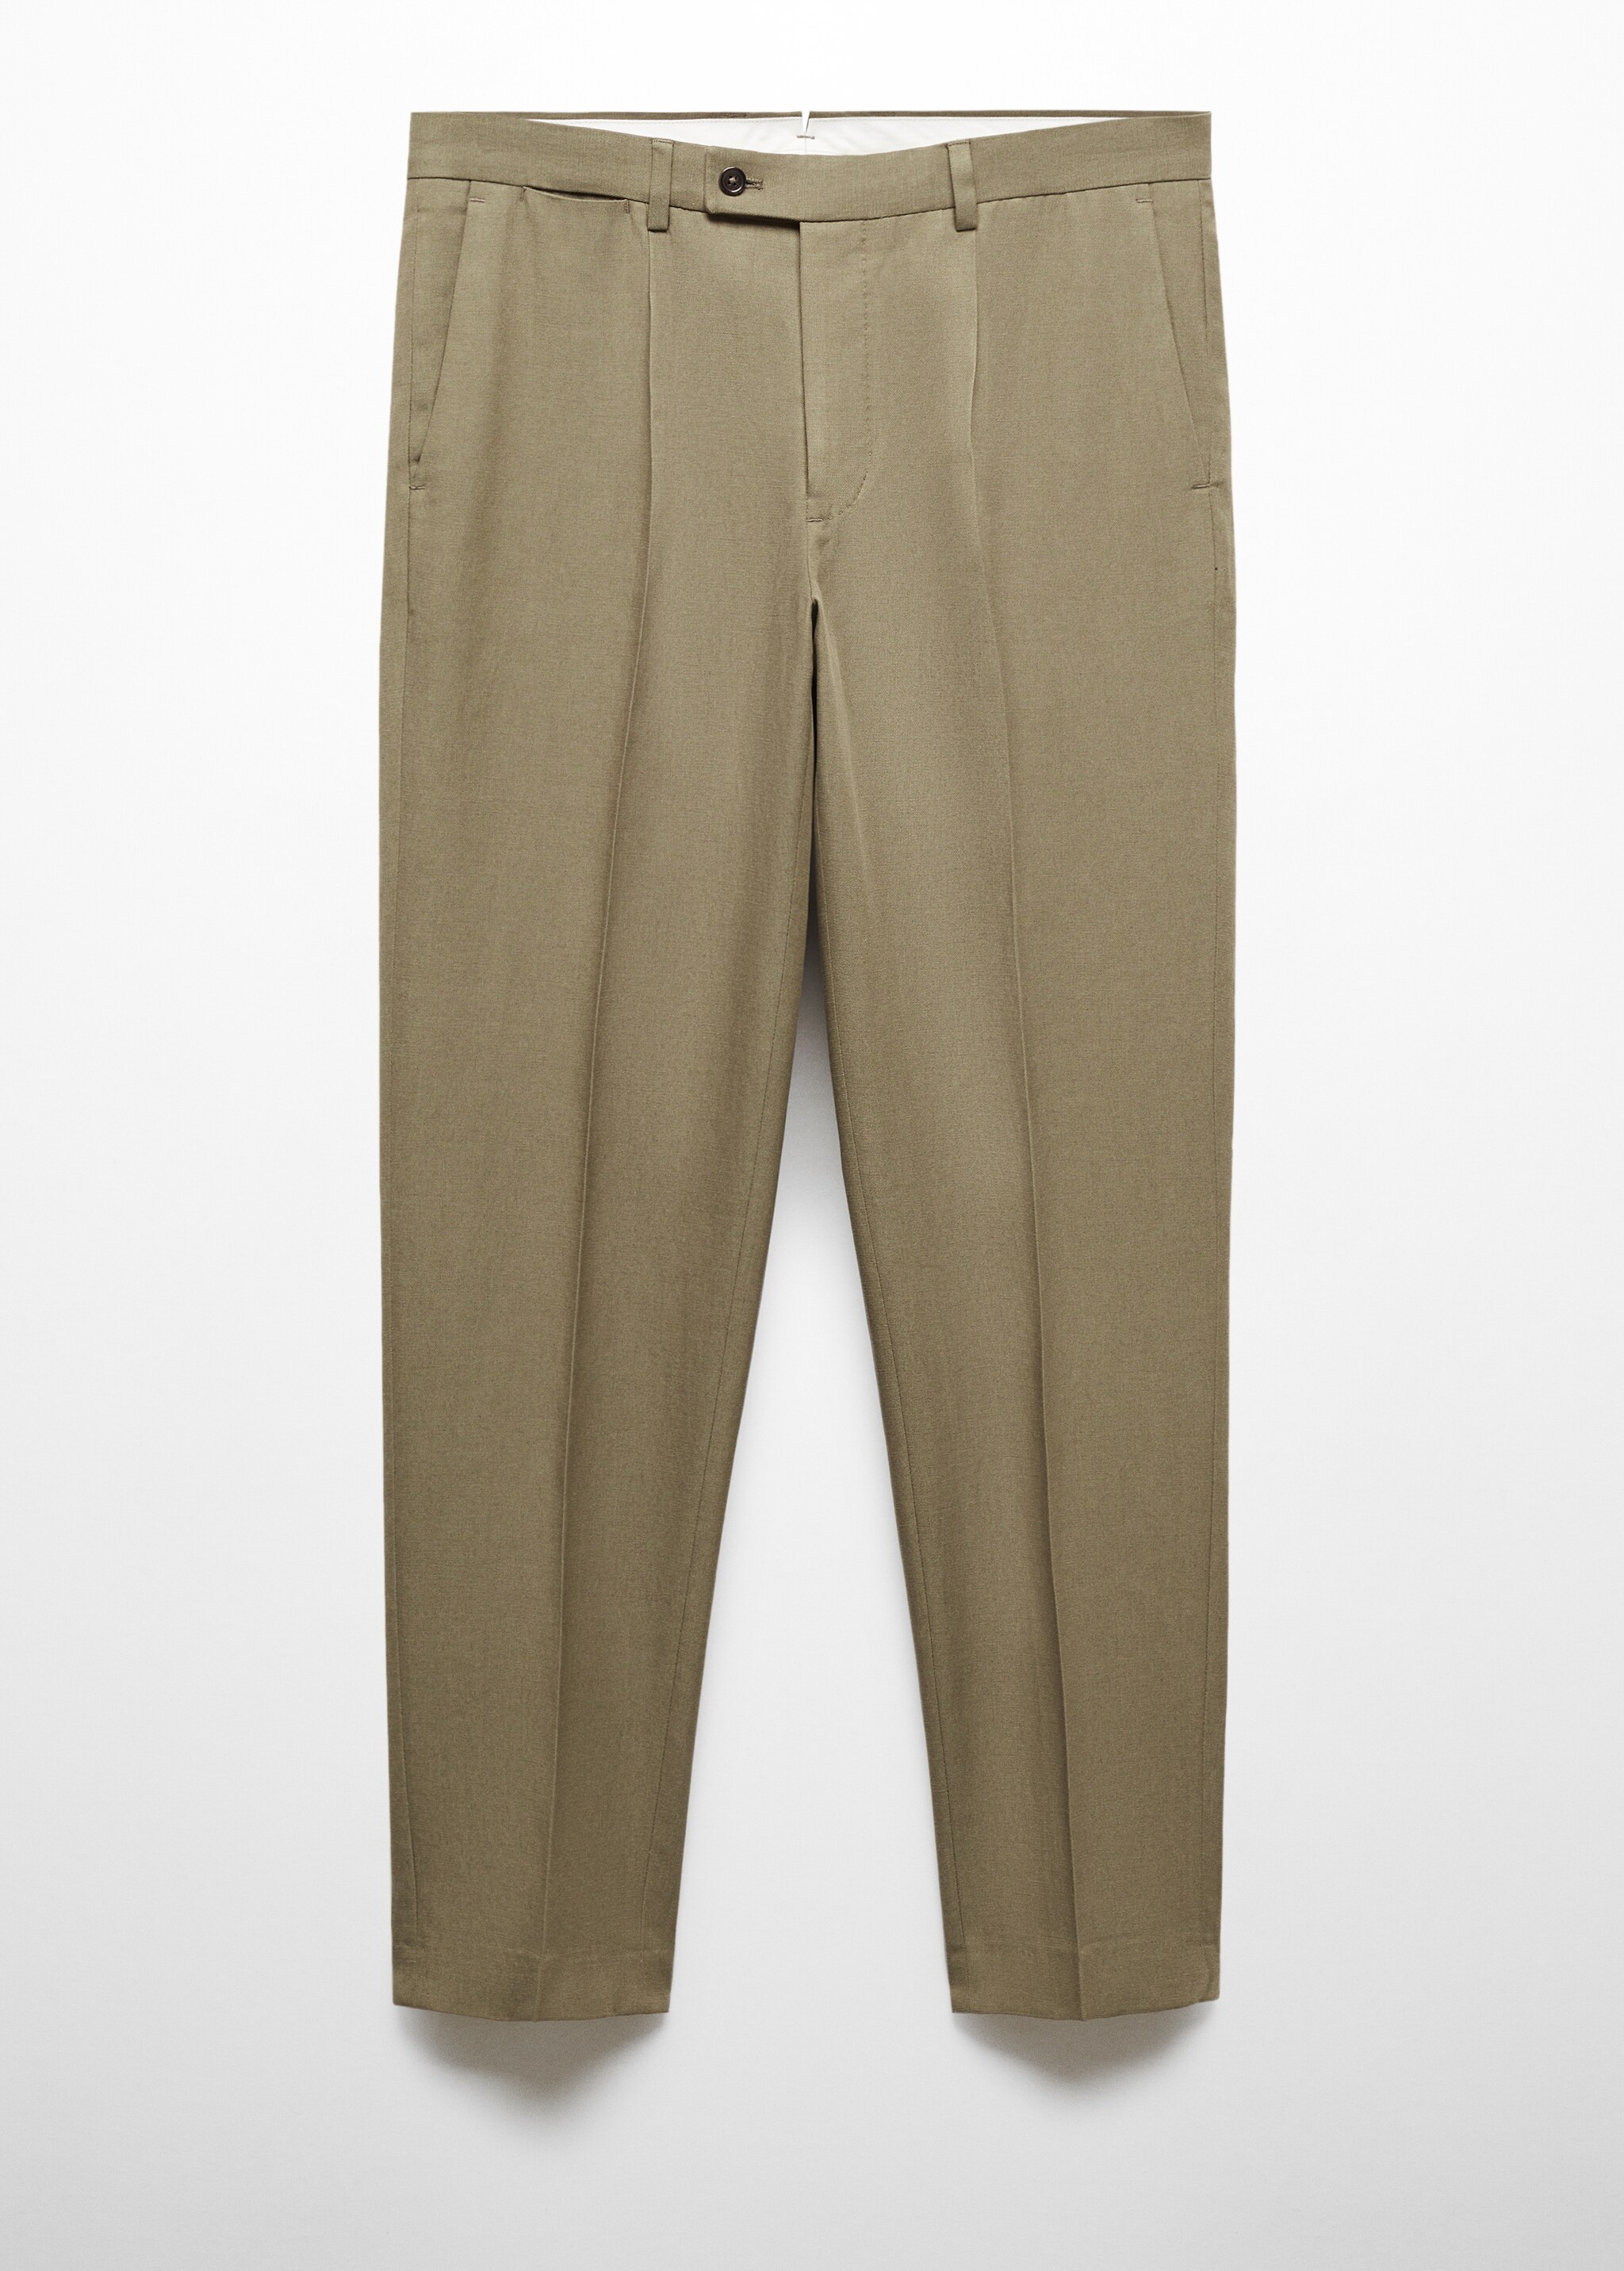 Pantalón traje Tencel™ slim fit pinzas - Artículo sin modelo